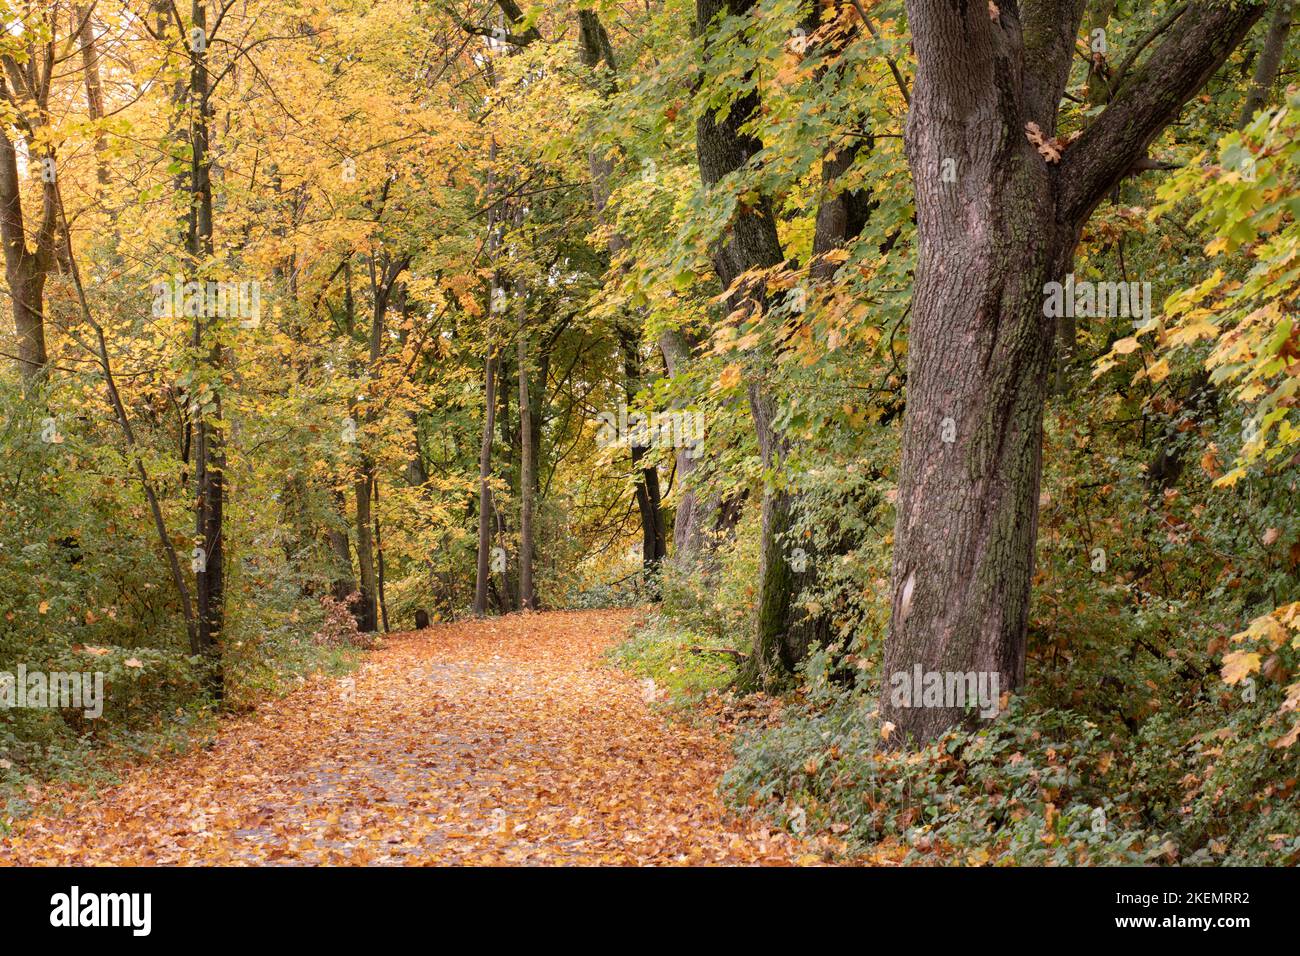 Im Herbst ist ein Weg durch den Wald mit vielen gelben Blättern übersät. Es gibt tote Blätter auf den Bäumen. Stockfoto